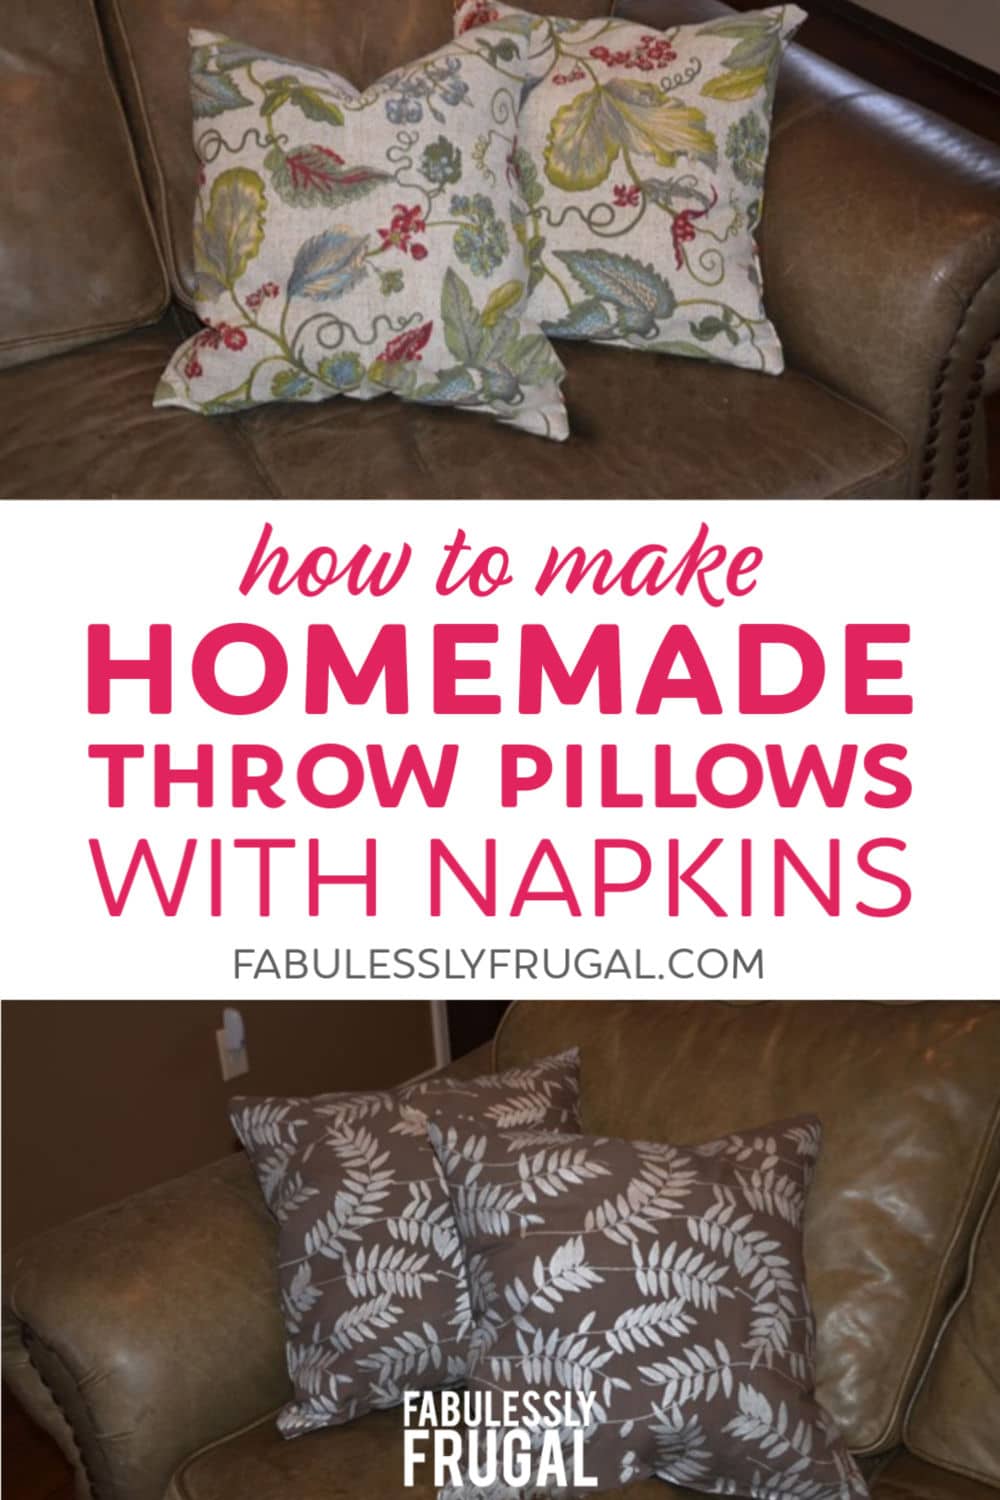 Homemade throw pillows